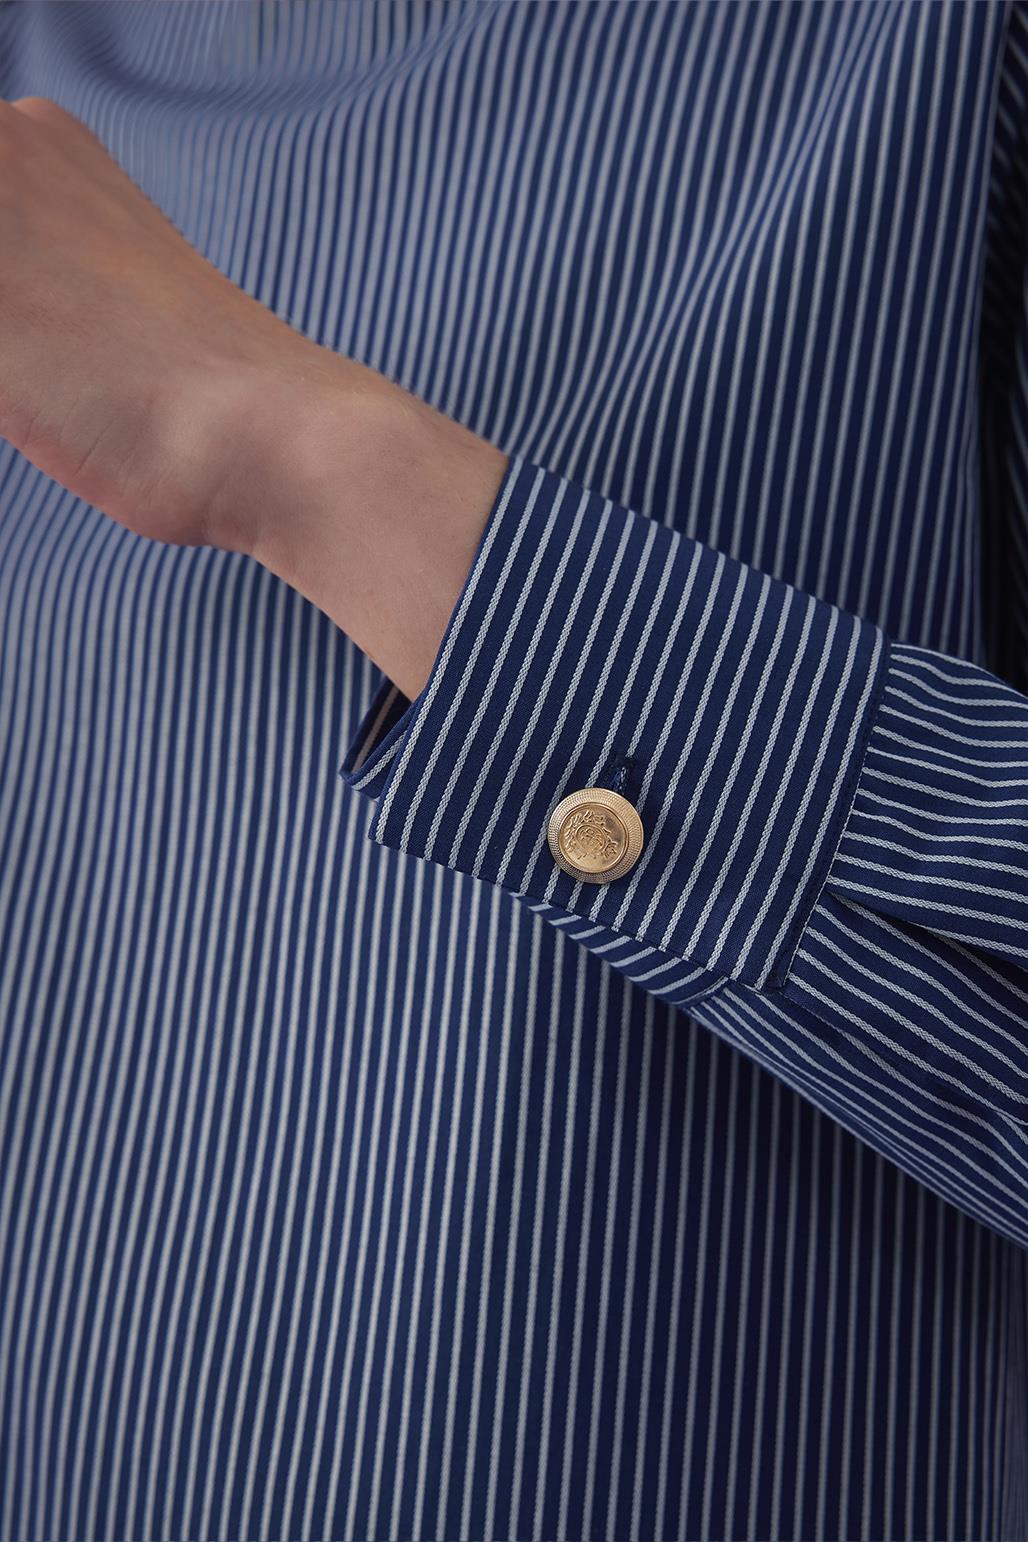 Shoulder Gold Detailed Striped Shirt Navy Blue